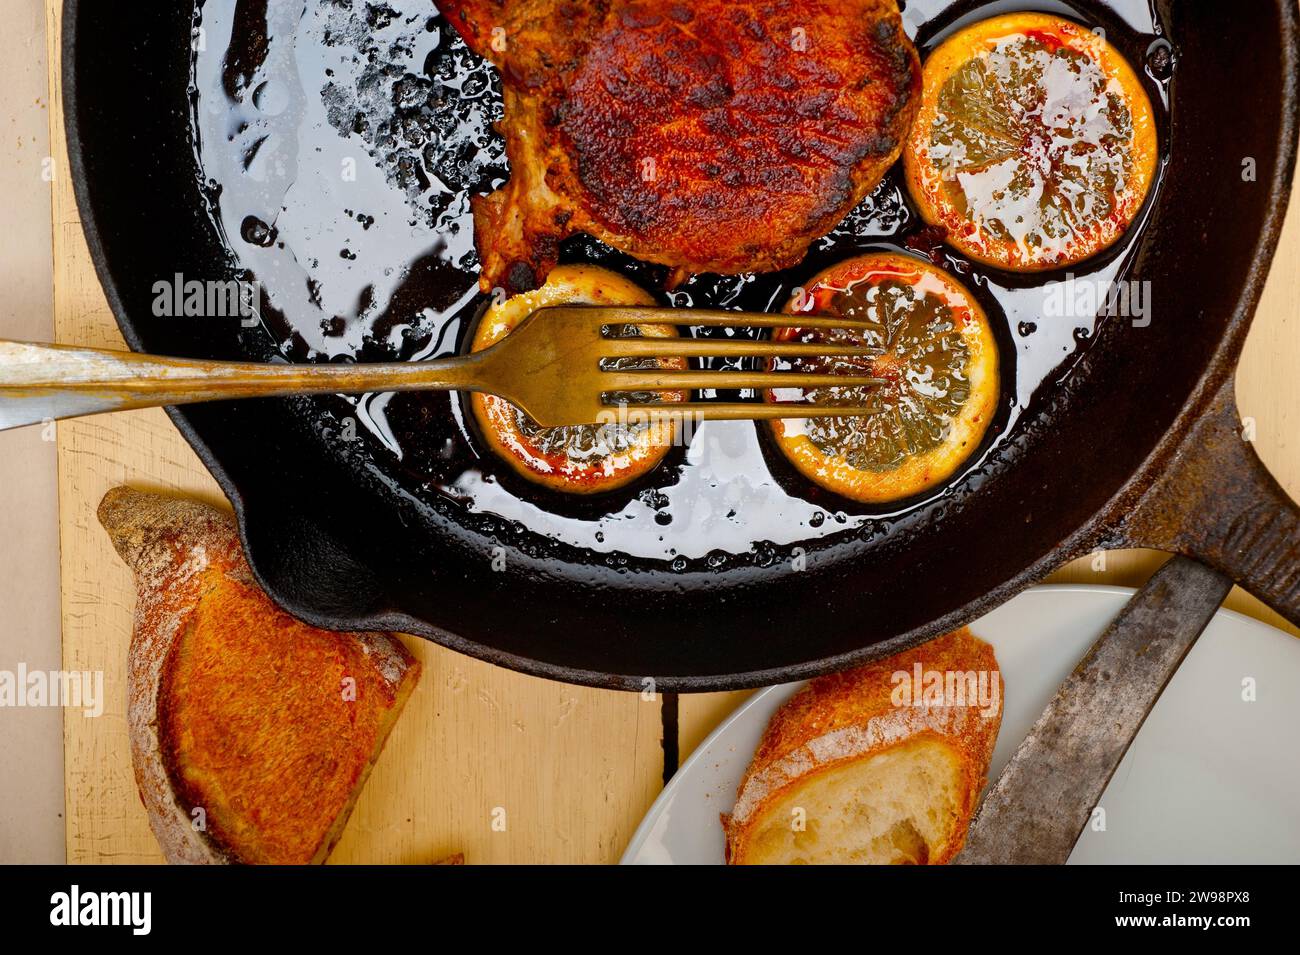 Côtelette de porc saisie sur poêle en fer avec assaisonnement au citron et aux épices, photographie alimentaire Banque D'Images